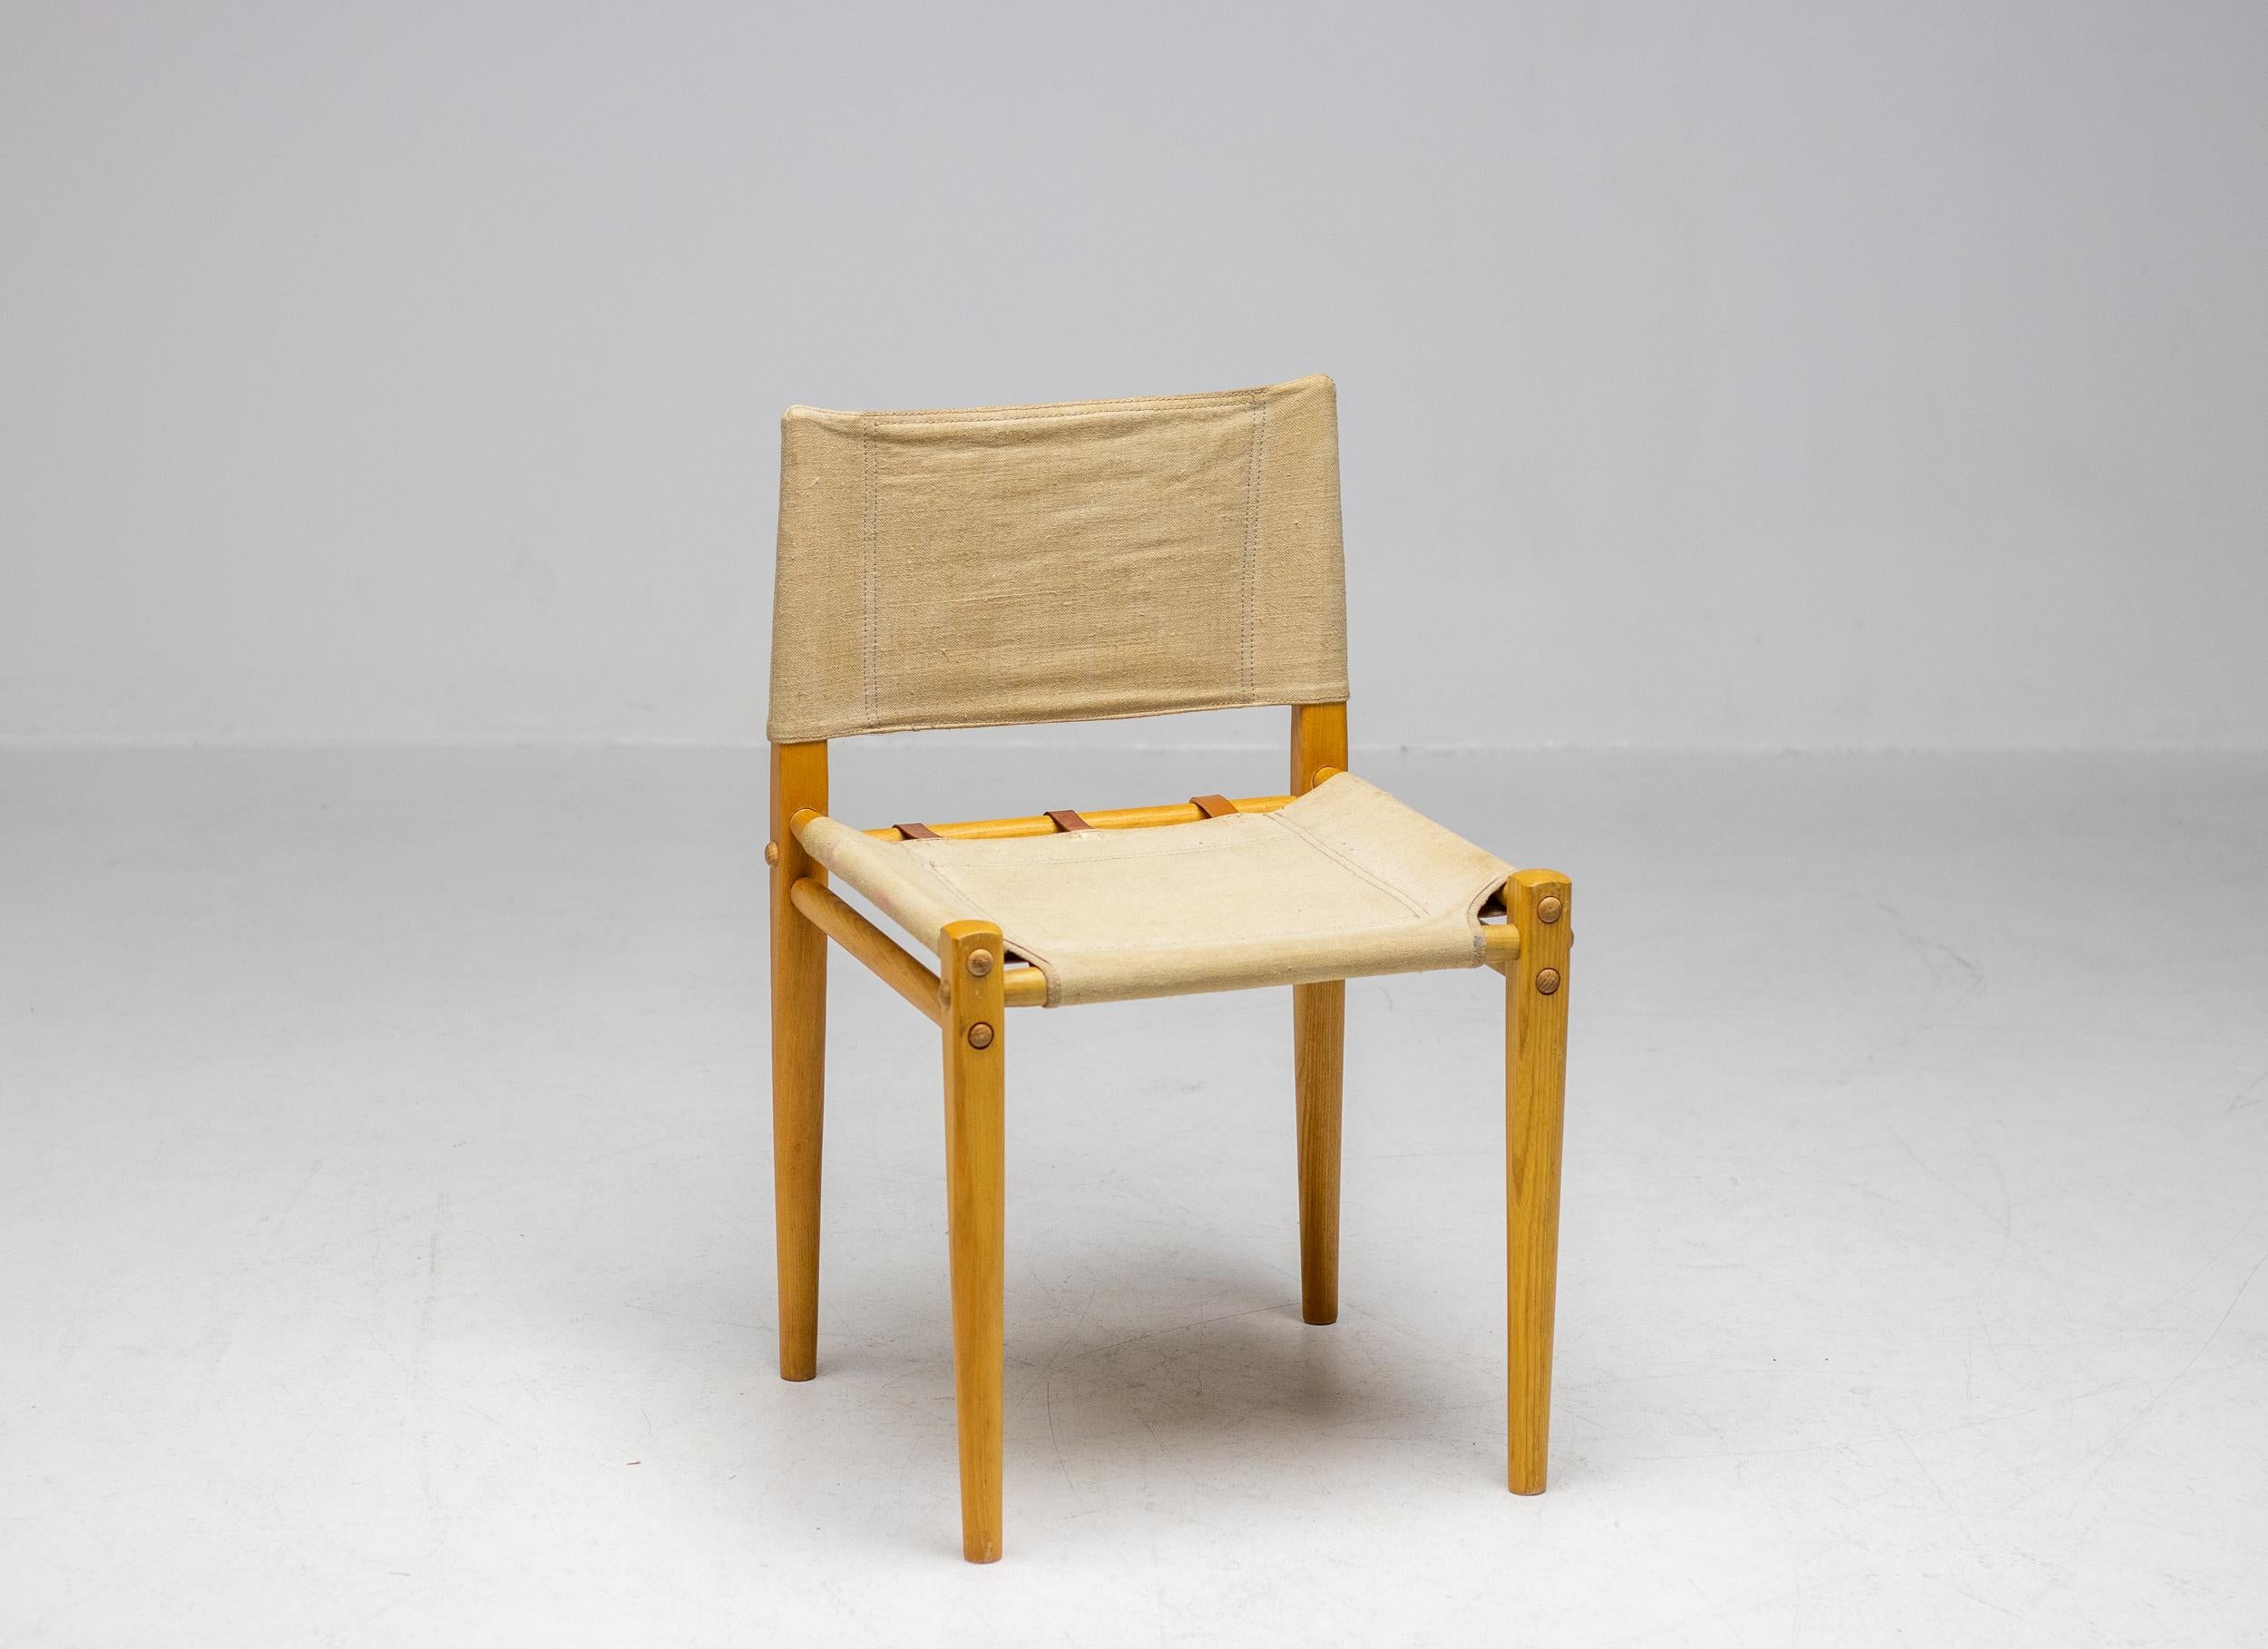 Seltener Beistellstuhl aus Esche und Segeltuch aus den 1970er Jahren von Zanotta. Der Stuhl ist sehr stabil, lässt sich aber auf Wunsch komplett zerlegen.  In wunderschönem Vintage-Zustand, einer der 3 Ledergurte im Sitz wurde ersetzt, wie auf einem